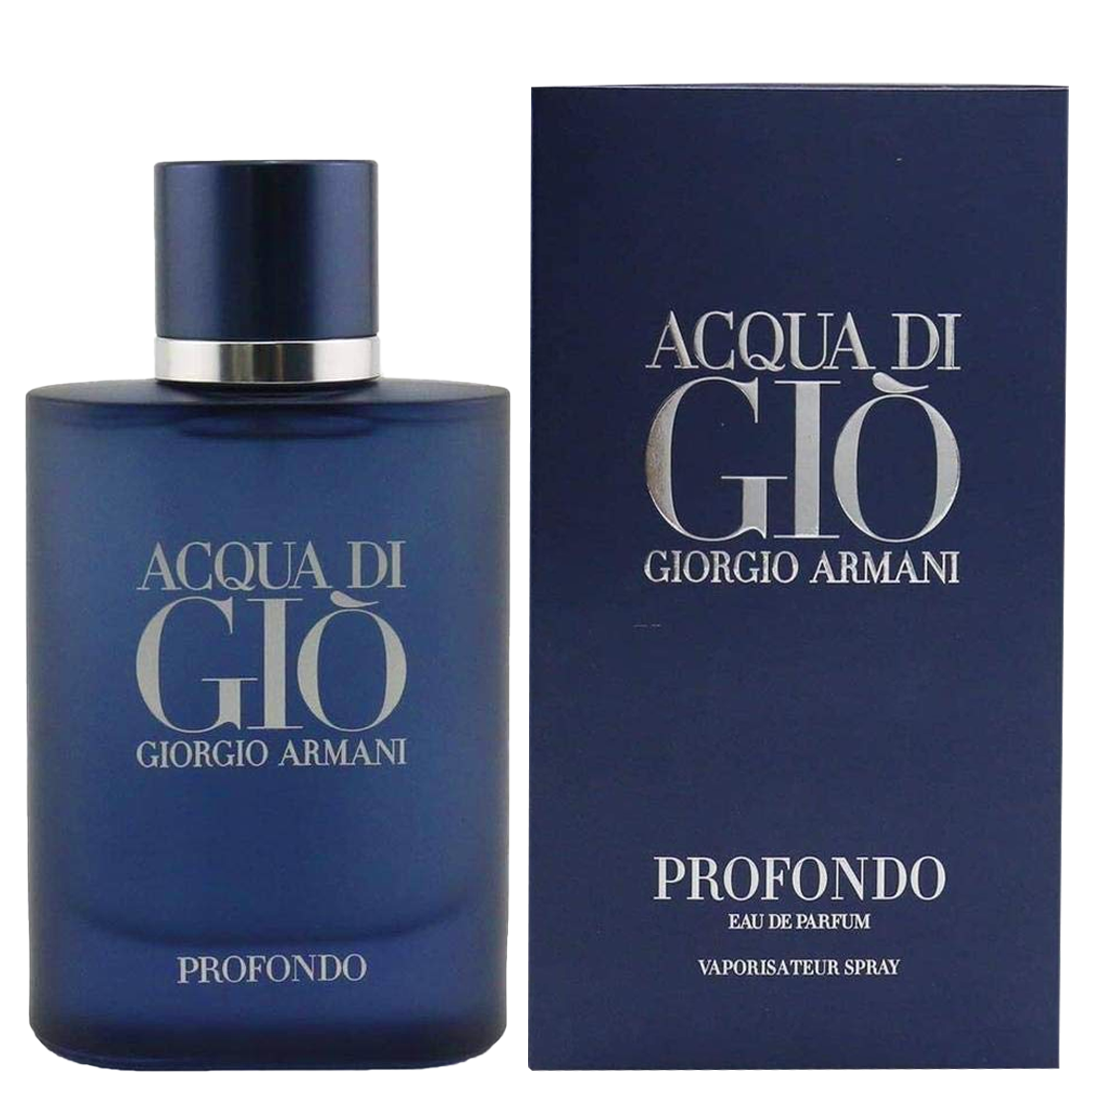 Giorgio Armani Acqua di Gio Profondo Eau de Toilette for Men